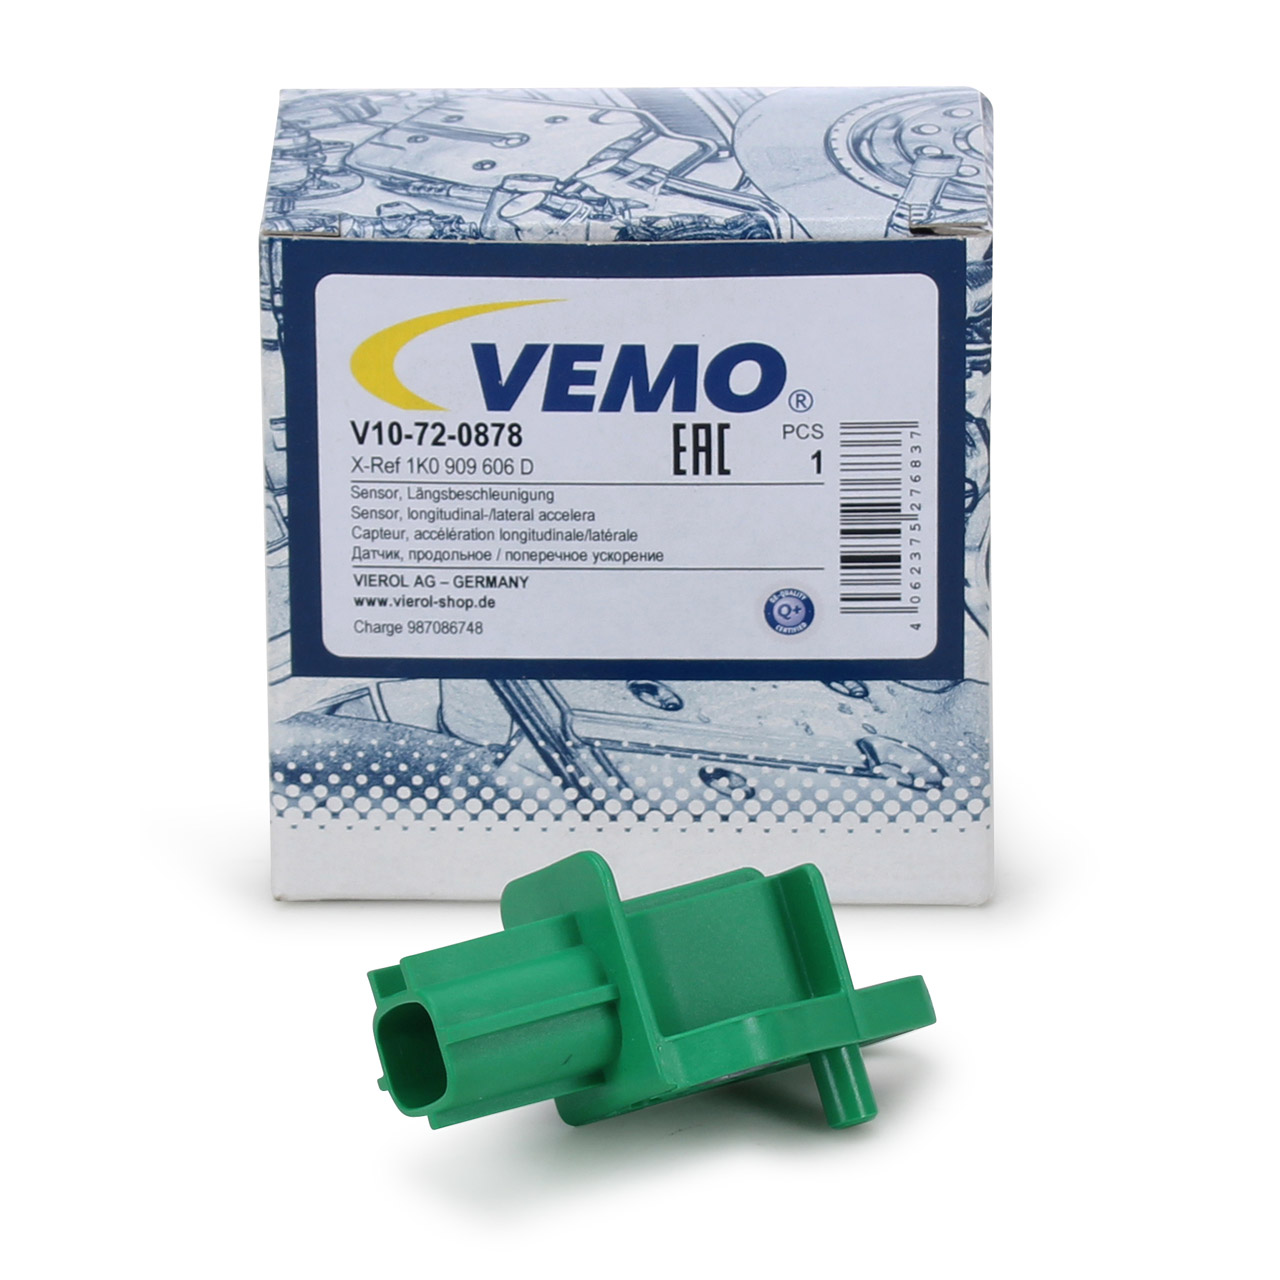 V10-72-0967 VEMO Kurbelwellensensor 3-polig, Induktivsensor, passiver  Sensor, mit Dichtung, für Kurbelwelle, mit Kabel, Original VEMO Qualität ▷  AUTODOC Preis und Erfahrung